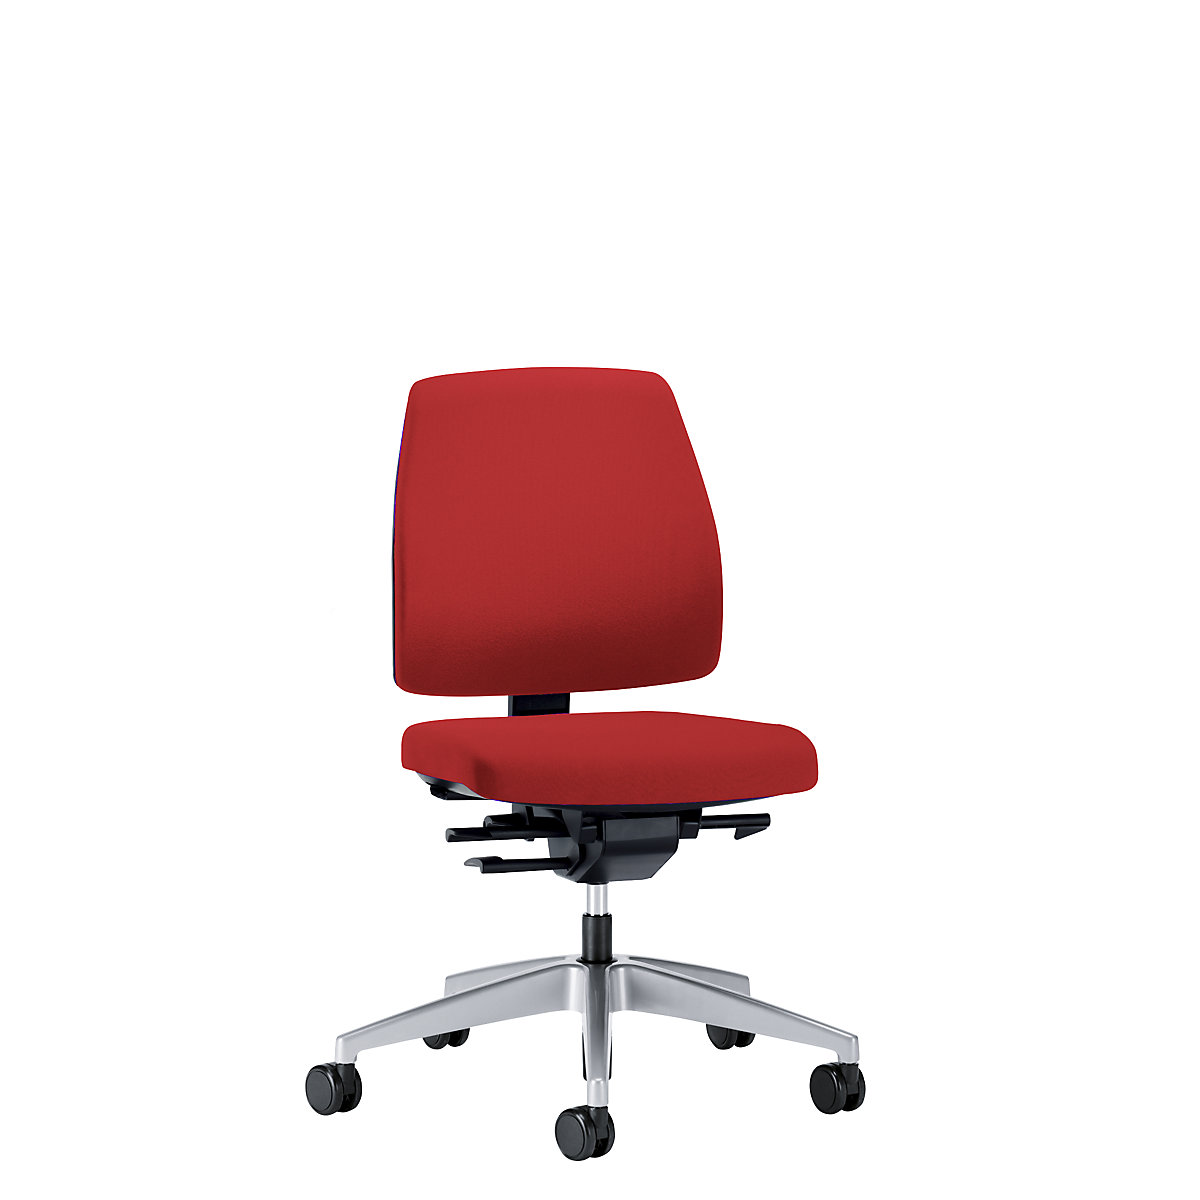 Obrotowe krzesło biurowe GOAL, wys. oparcia 430 mm – interstuhl, szkielet brylantowo-srebrny, z twardymi rolkami, czerwony, głęb. siedziska 410 mm-1